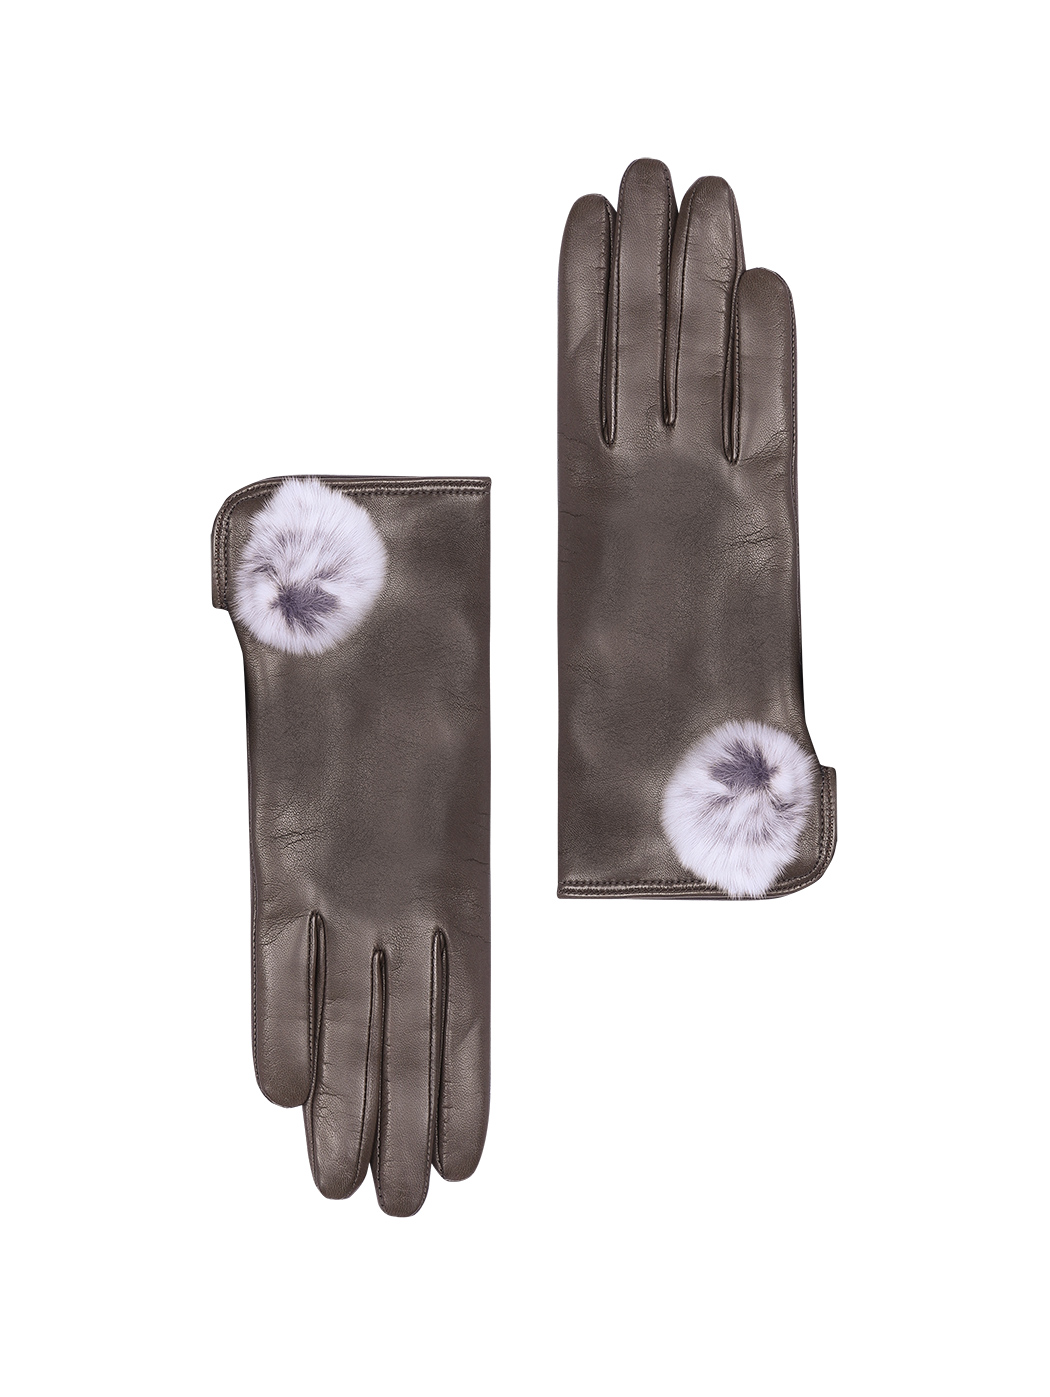 Women's Leather Gloves With Fur Pom-pom